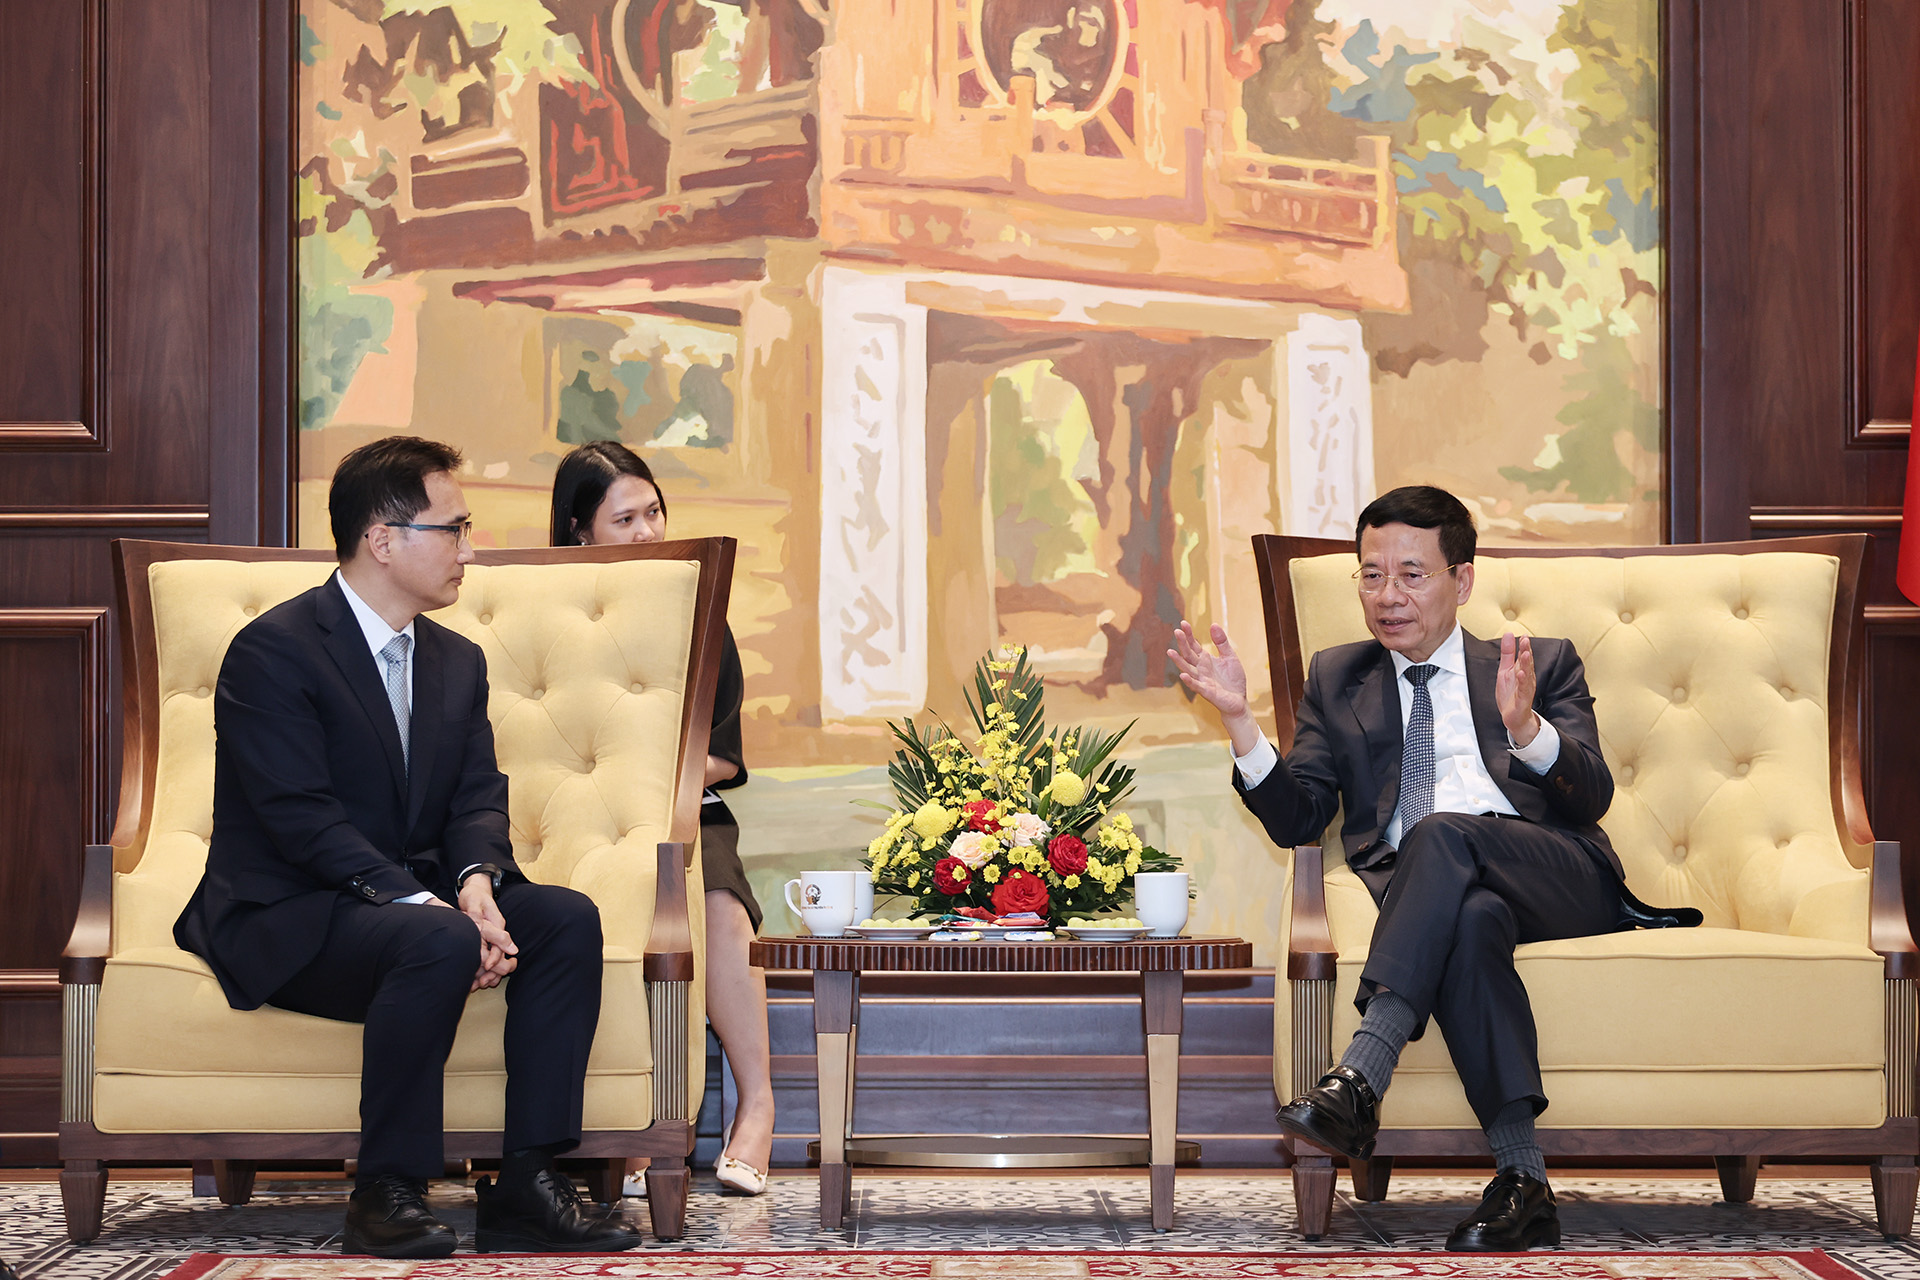 Bộ trưởng Nguyễn Mạnh Hùng đề nghị Samsung chia sẻ kinh nghiệm về các mô hình kinh doanh mới, về các ứng dụng (use cases) sử dụng 5G tại các quốc gia trên thế giới mà Samsung đang hoạt động kinh doanh